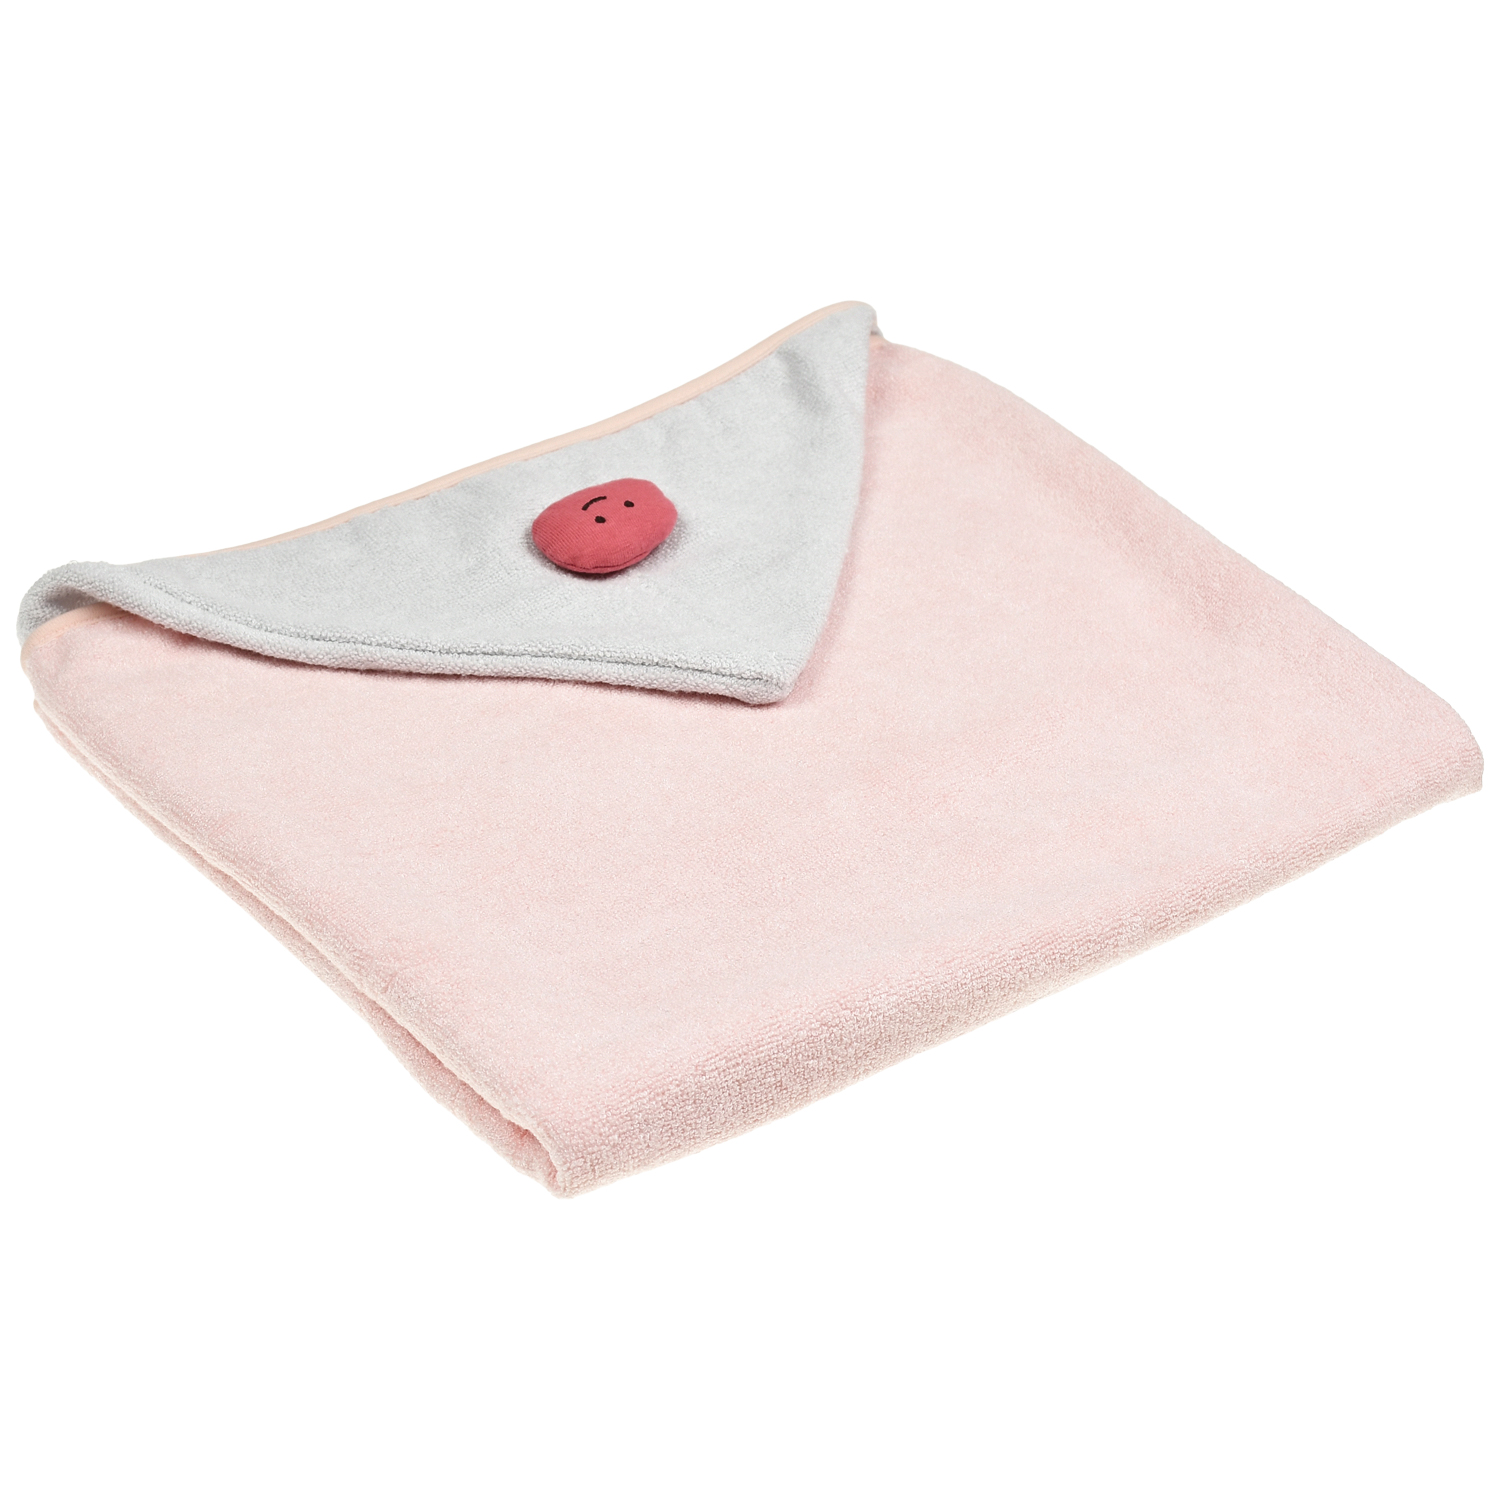 Полотенце с капюшоном, 115*68 см BAMBOO BEBE детское полотенце пончо розовый bamboo bebe детское